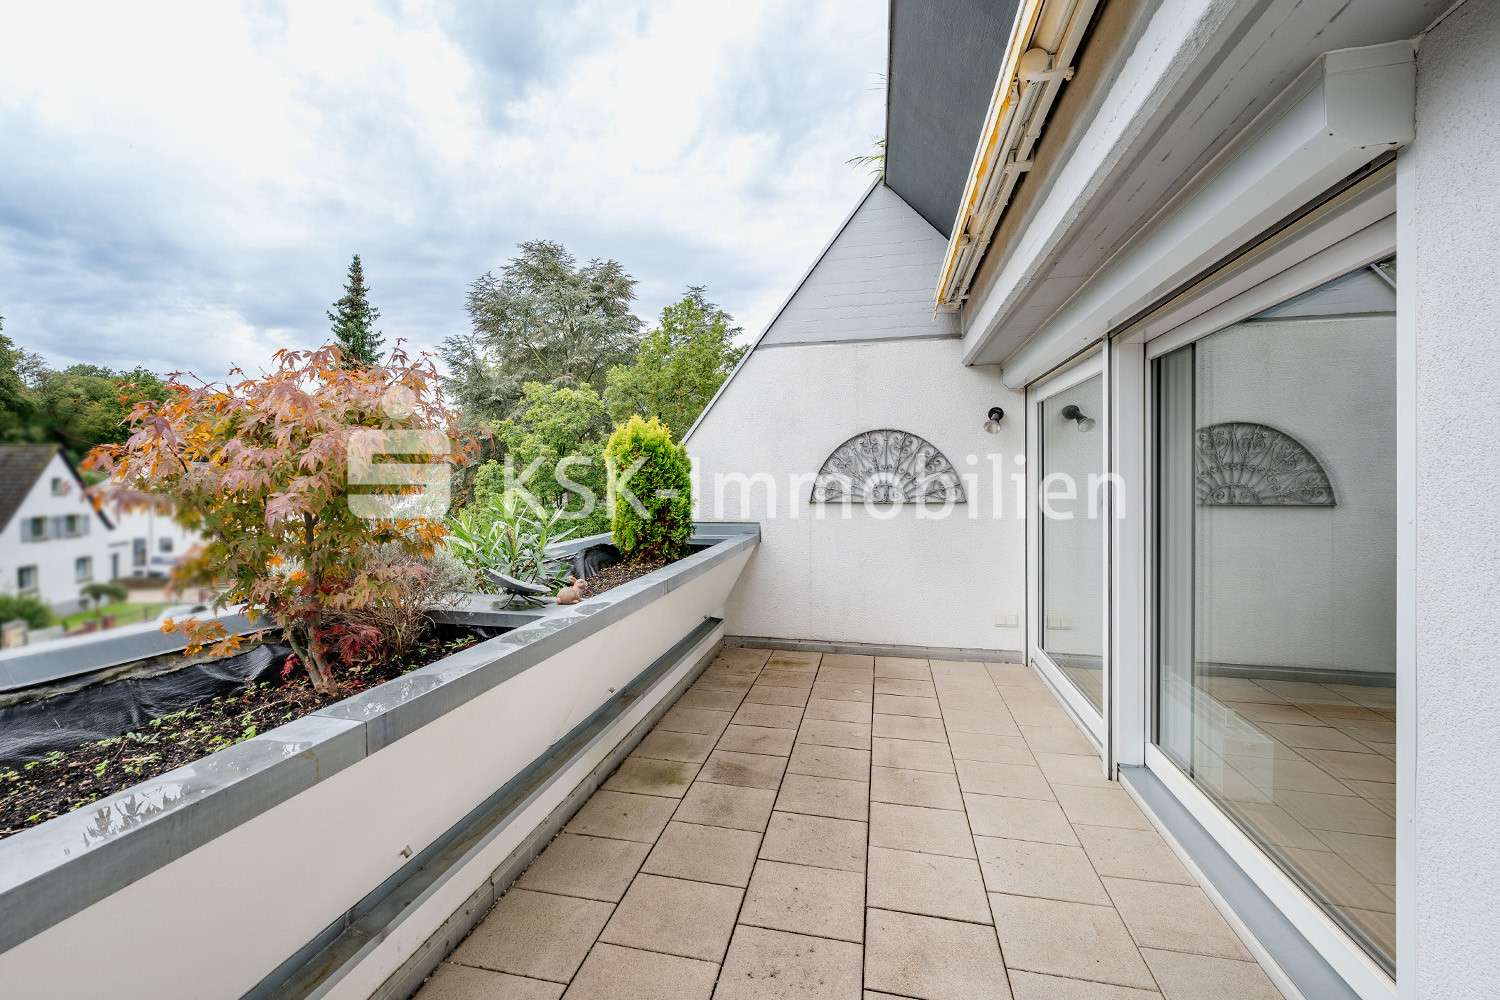 124798 Terrasse - Terrassen-Wohnung in 51467 Bergisch Gladbach mit 116m² kaufen